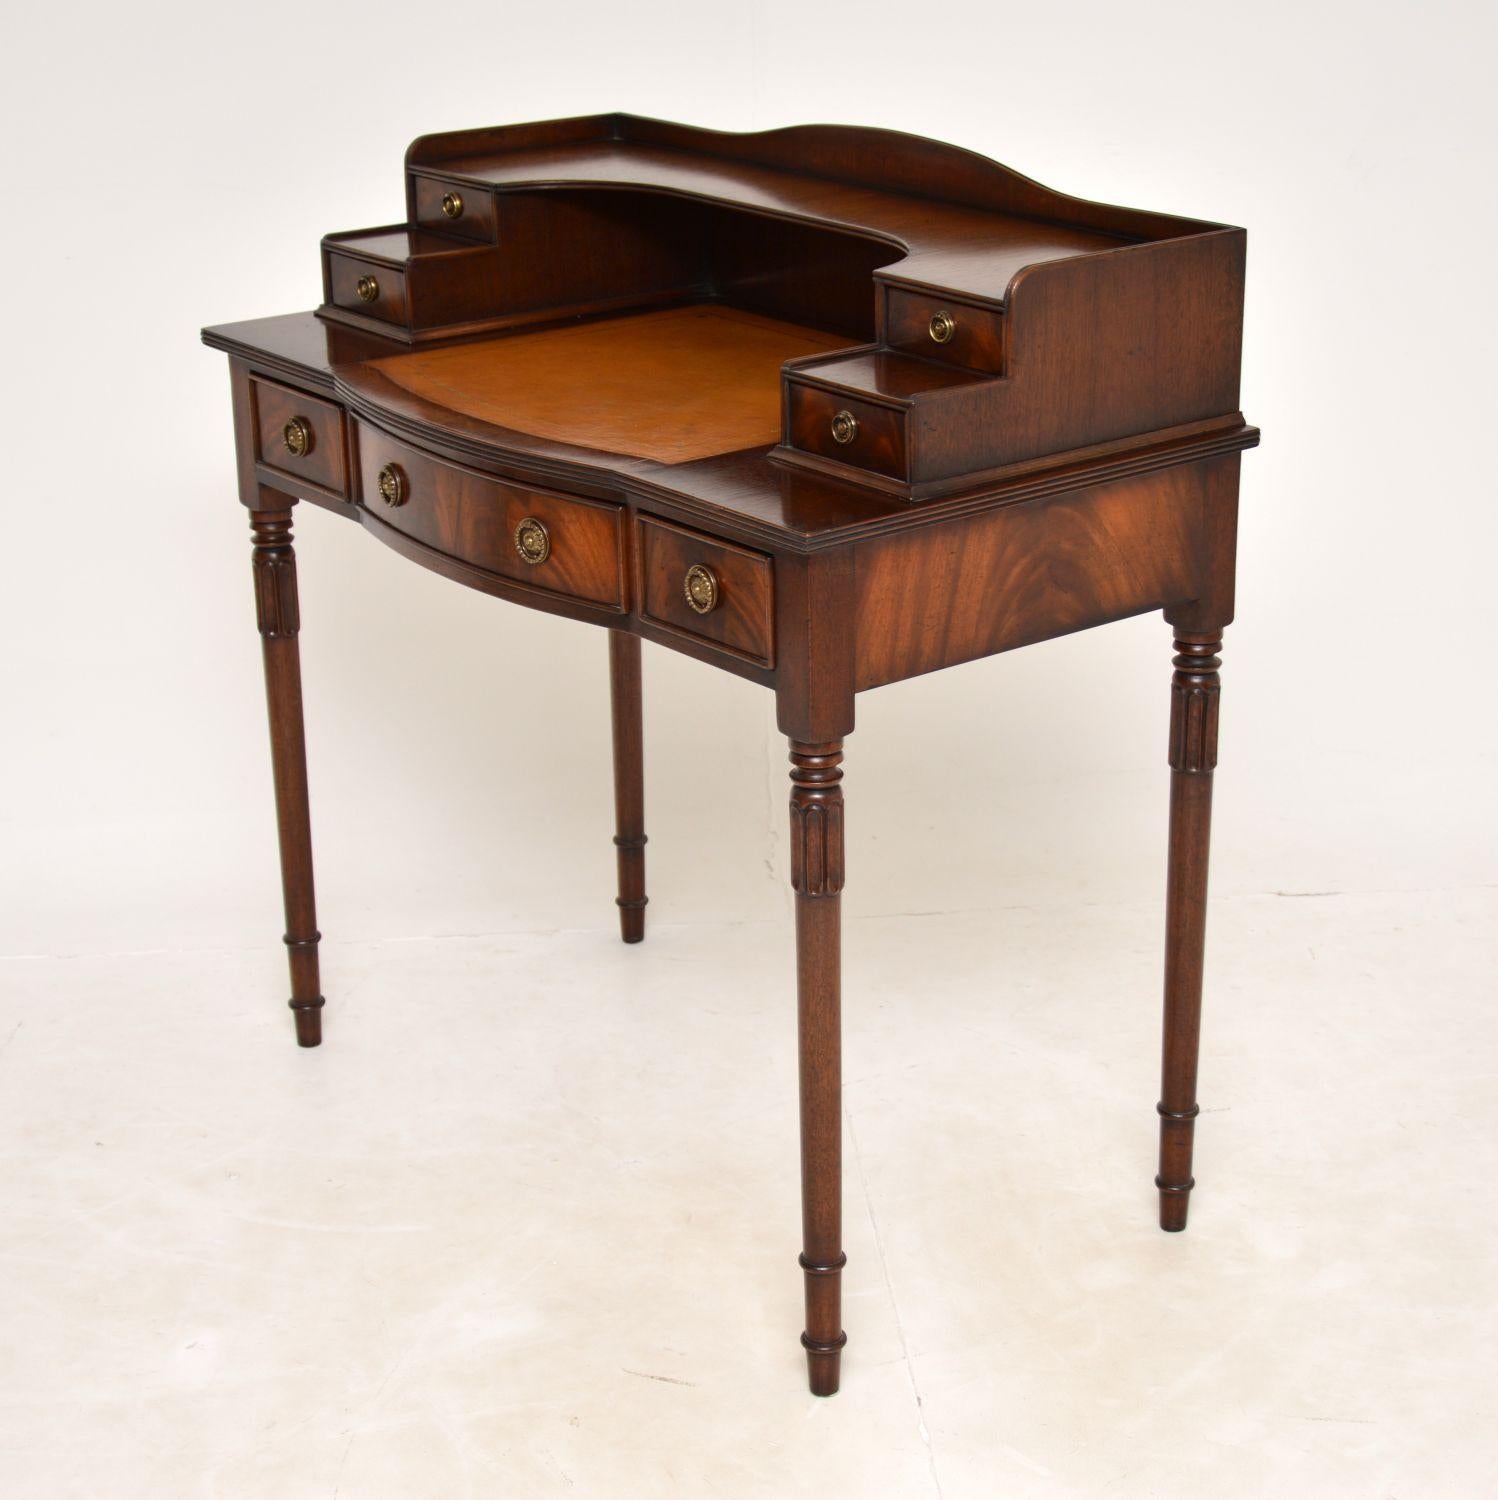 Sheraton Antique Leather Top Bonheur Du Jour Writing Table / Desk